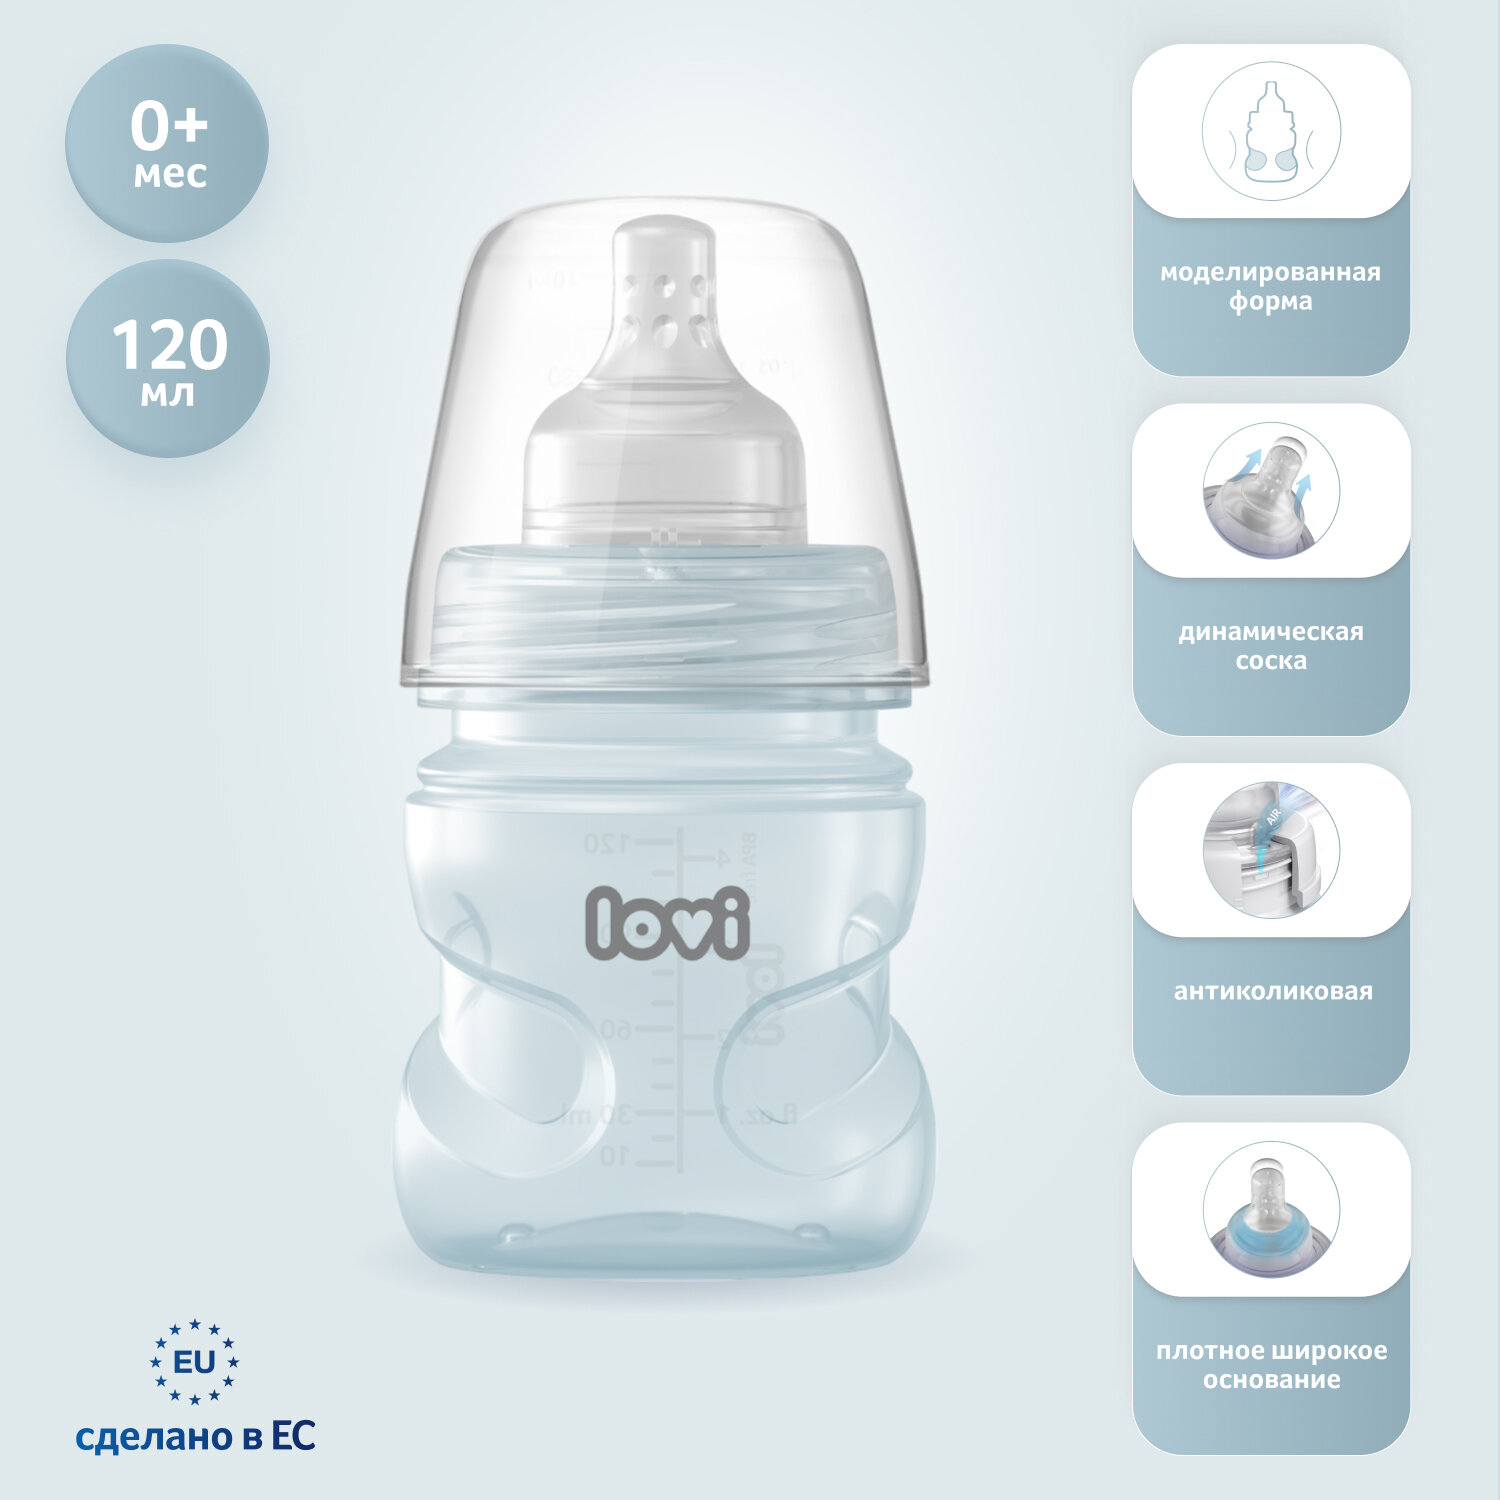 Детская антиколиковая бутылочка Lovi Trends для кормления новорожденных, зеленый